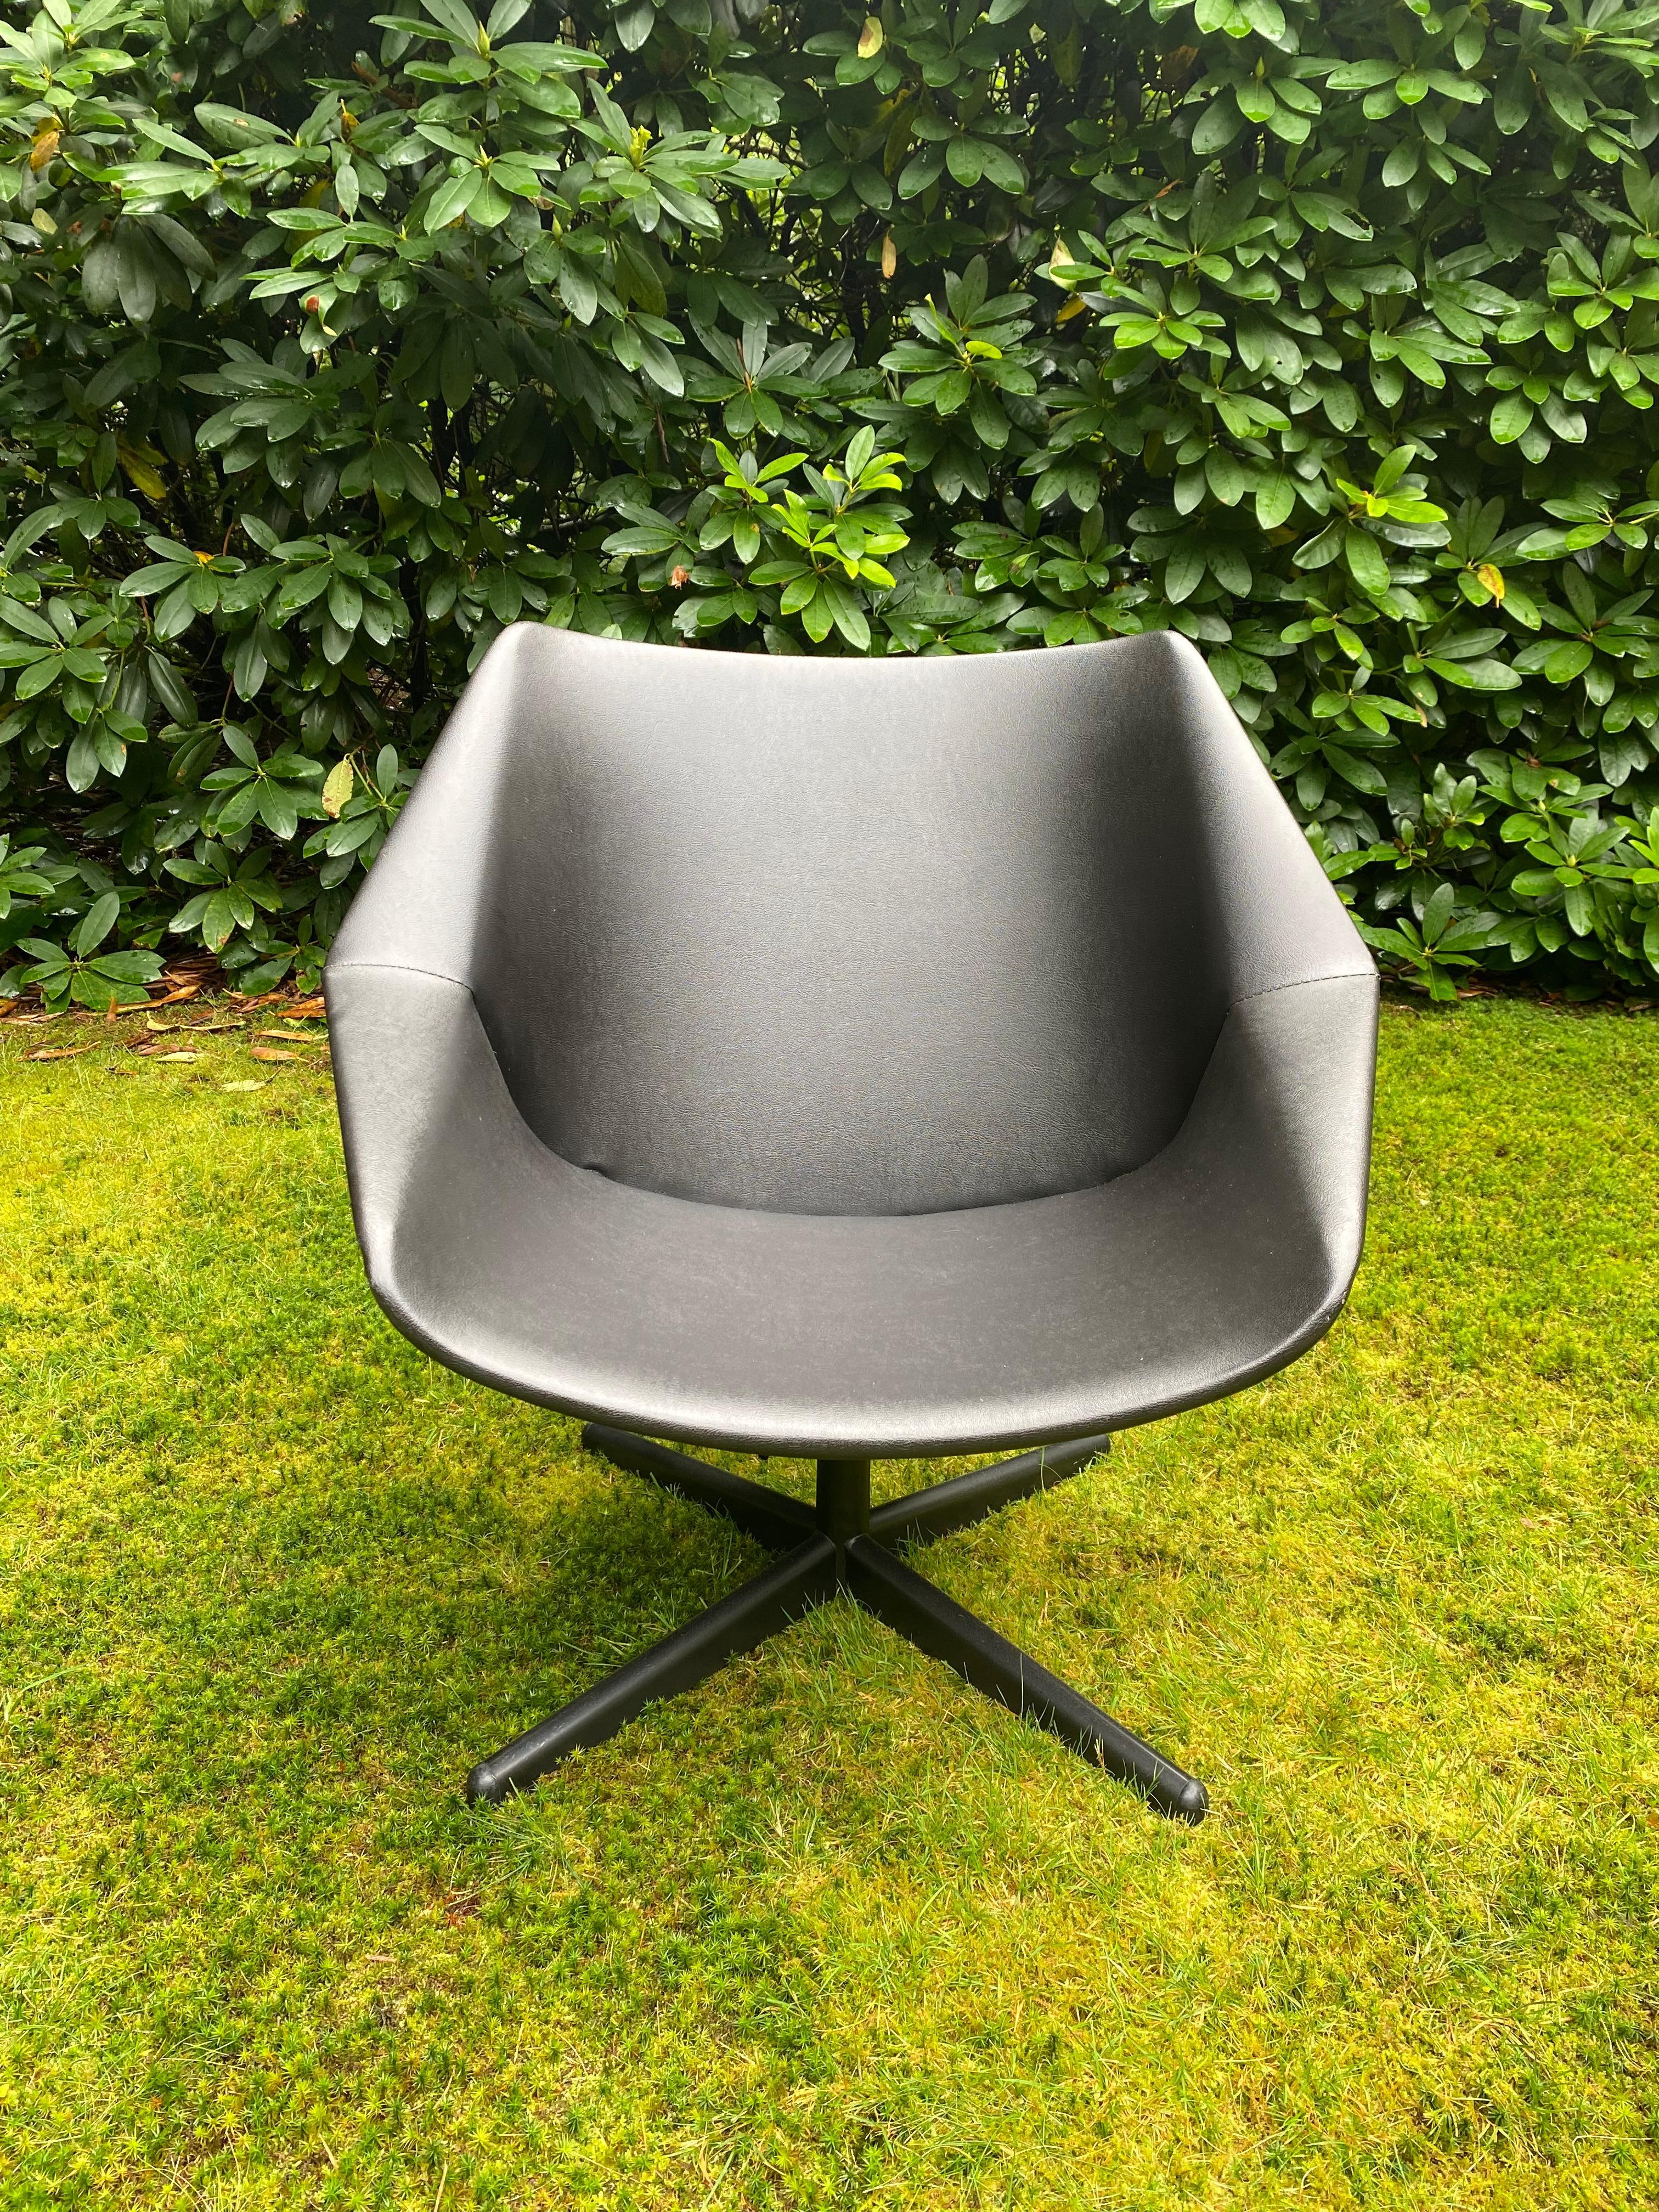 Schwarzer Drehstuhl auf einem Vierstern-Metallgestell, entworfen von Cees Braakman für Pastoe in den frühen 1960er Jahren. Dieses Modell, FM08, ist mit schwarzem Kunstleder gepolstert. Die maximale Höhe beträgt 72 cm. Dieser Stuhl remming in gutem